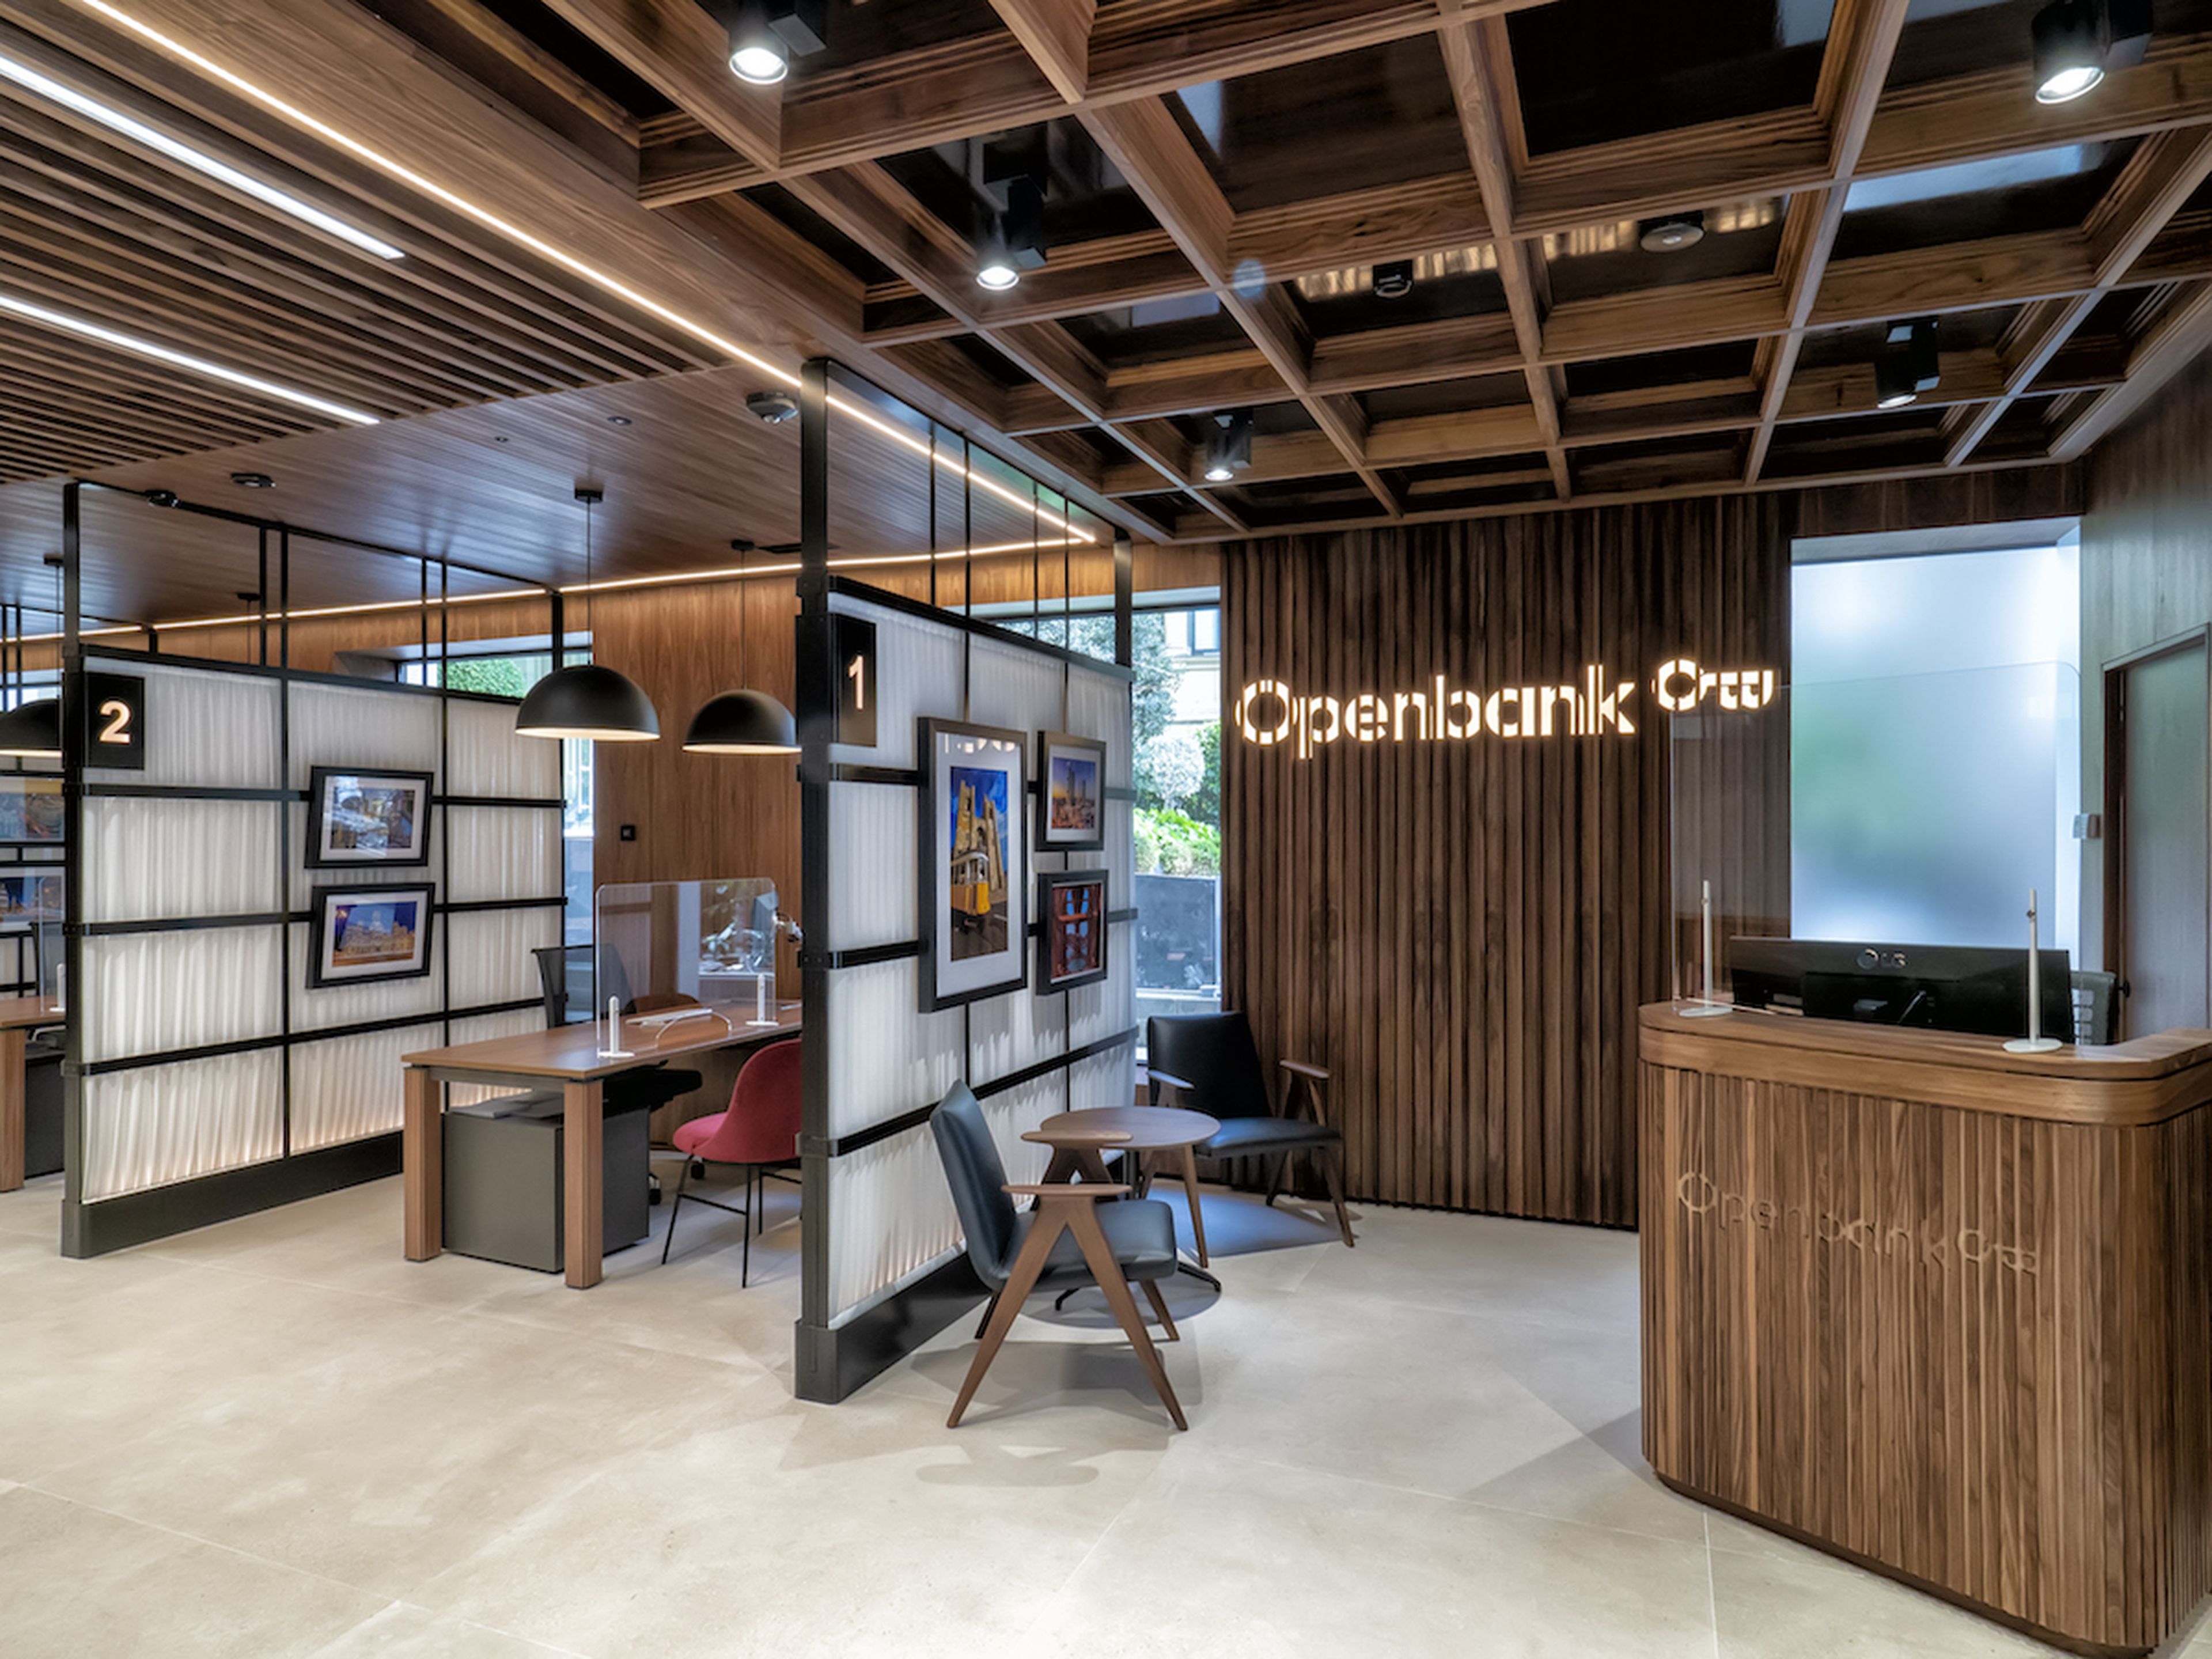 Una oficina de Openbank, el banco digital de Santander